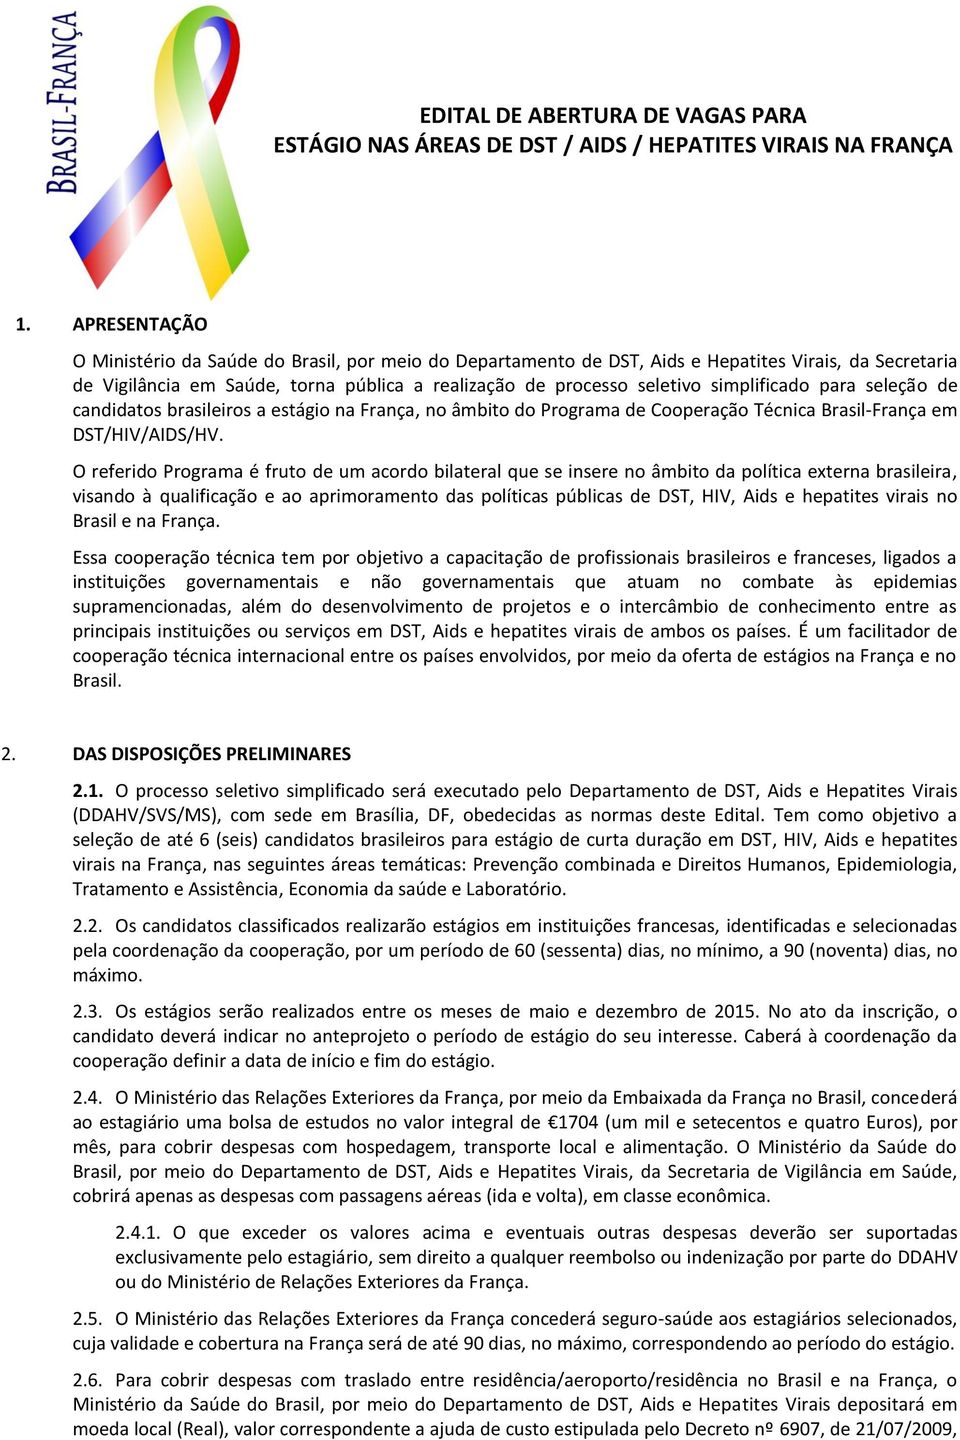 simplificado para seleção de candidatos brasileiros a estágio na França, no âmbito do Programa de Cooperação Técnica Brasil-França em DST/HIV/AIDS/HV.